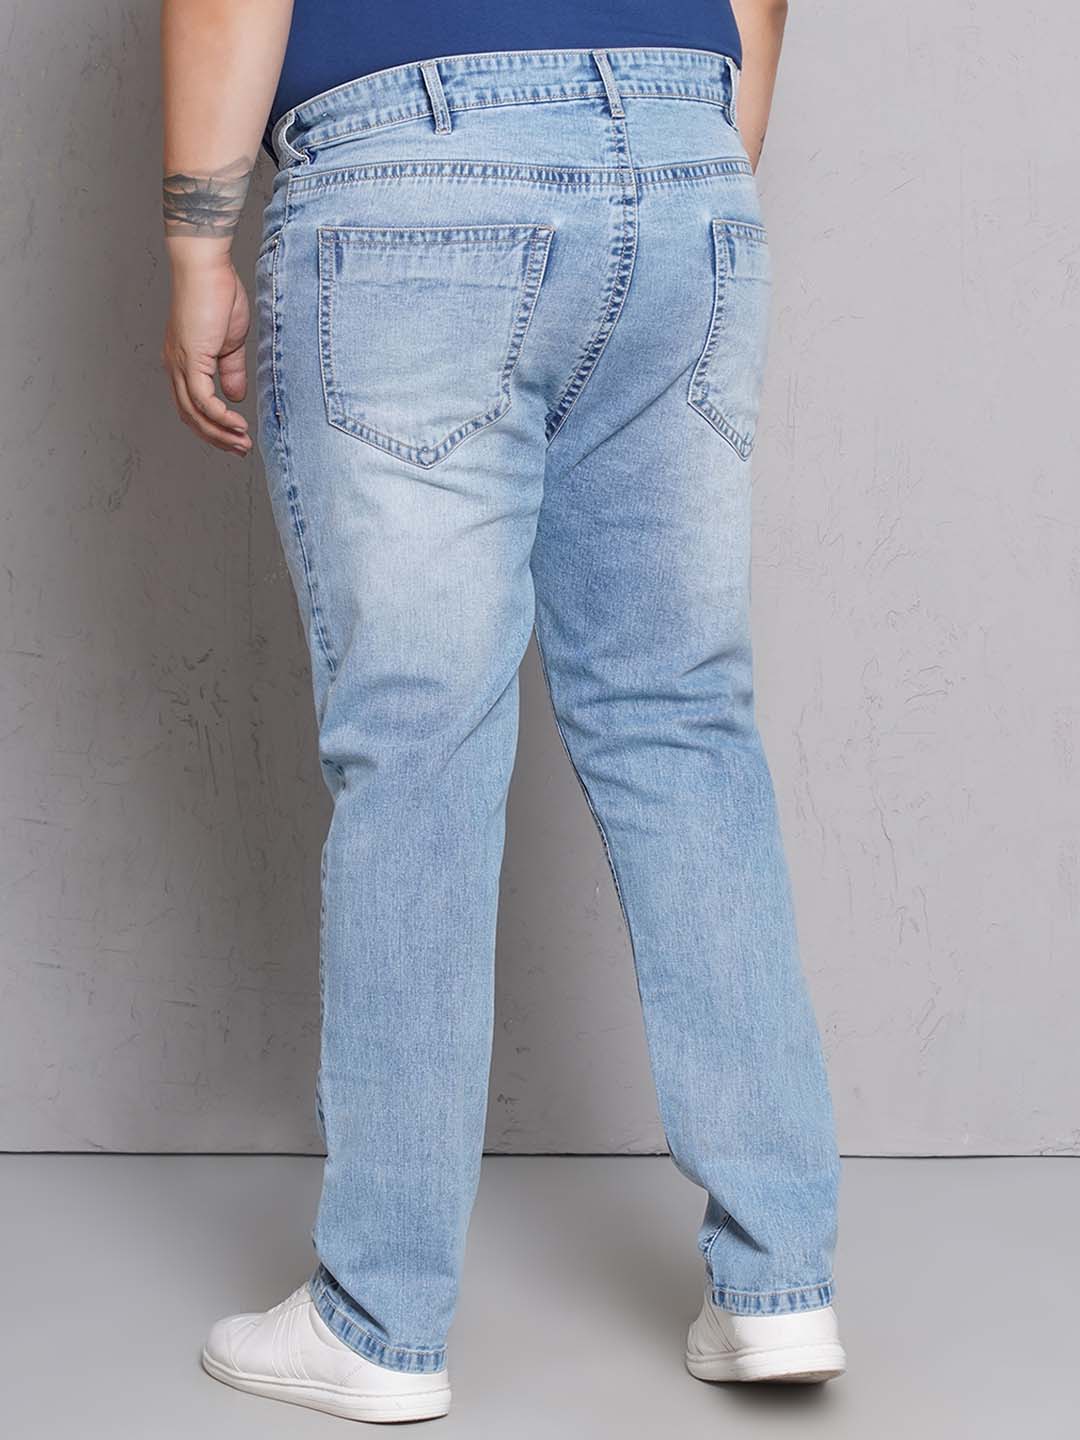 bottomwear/jeans/JPJ27118/jpj27118-5.jpg